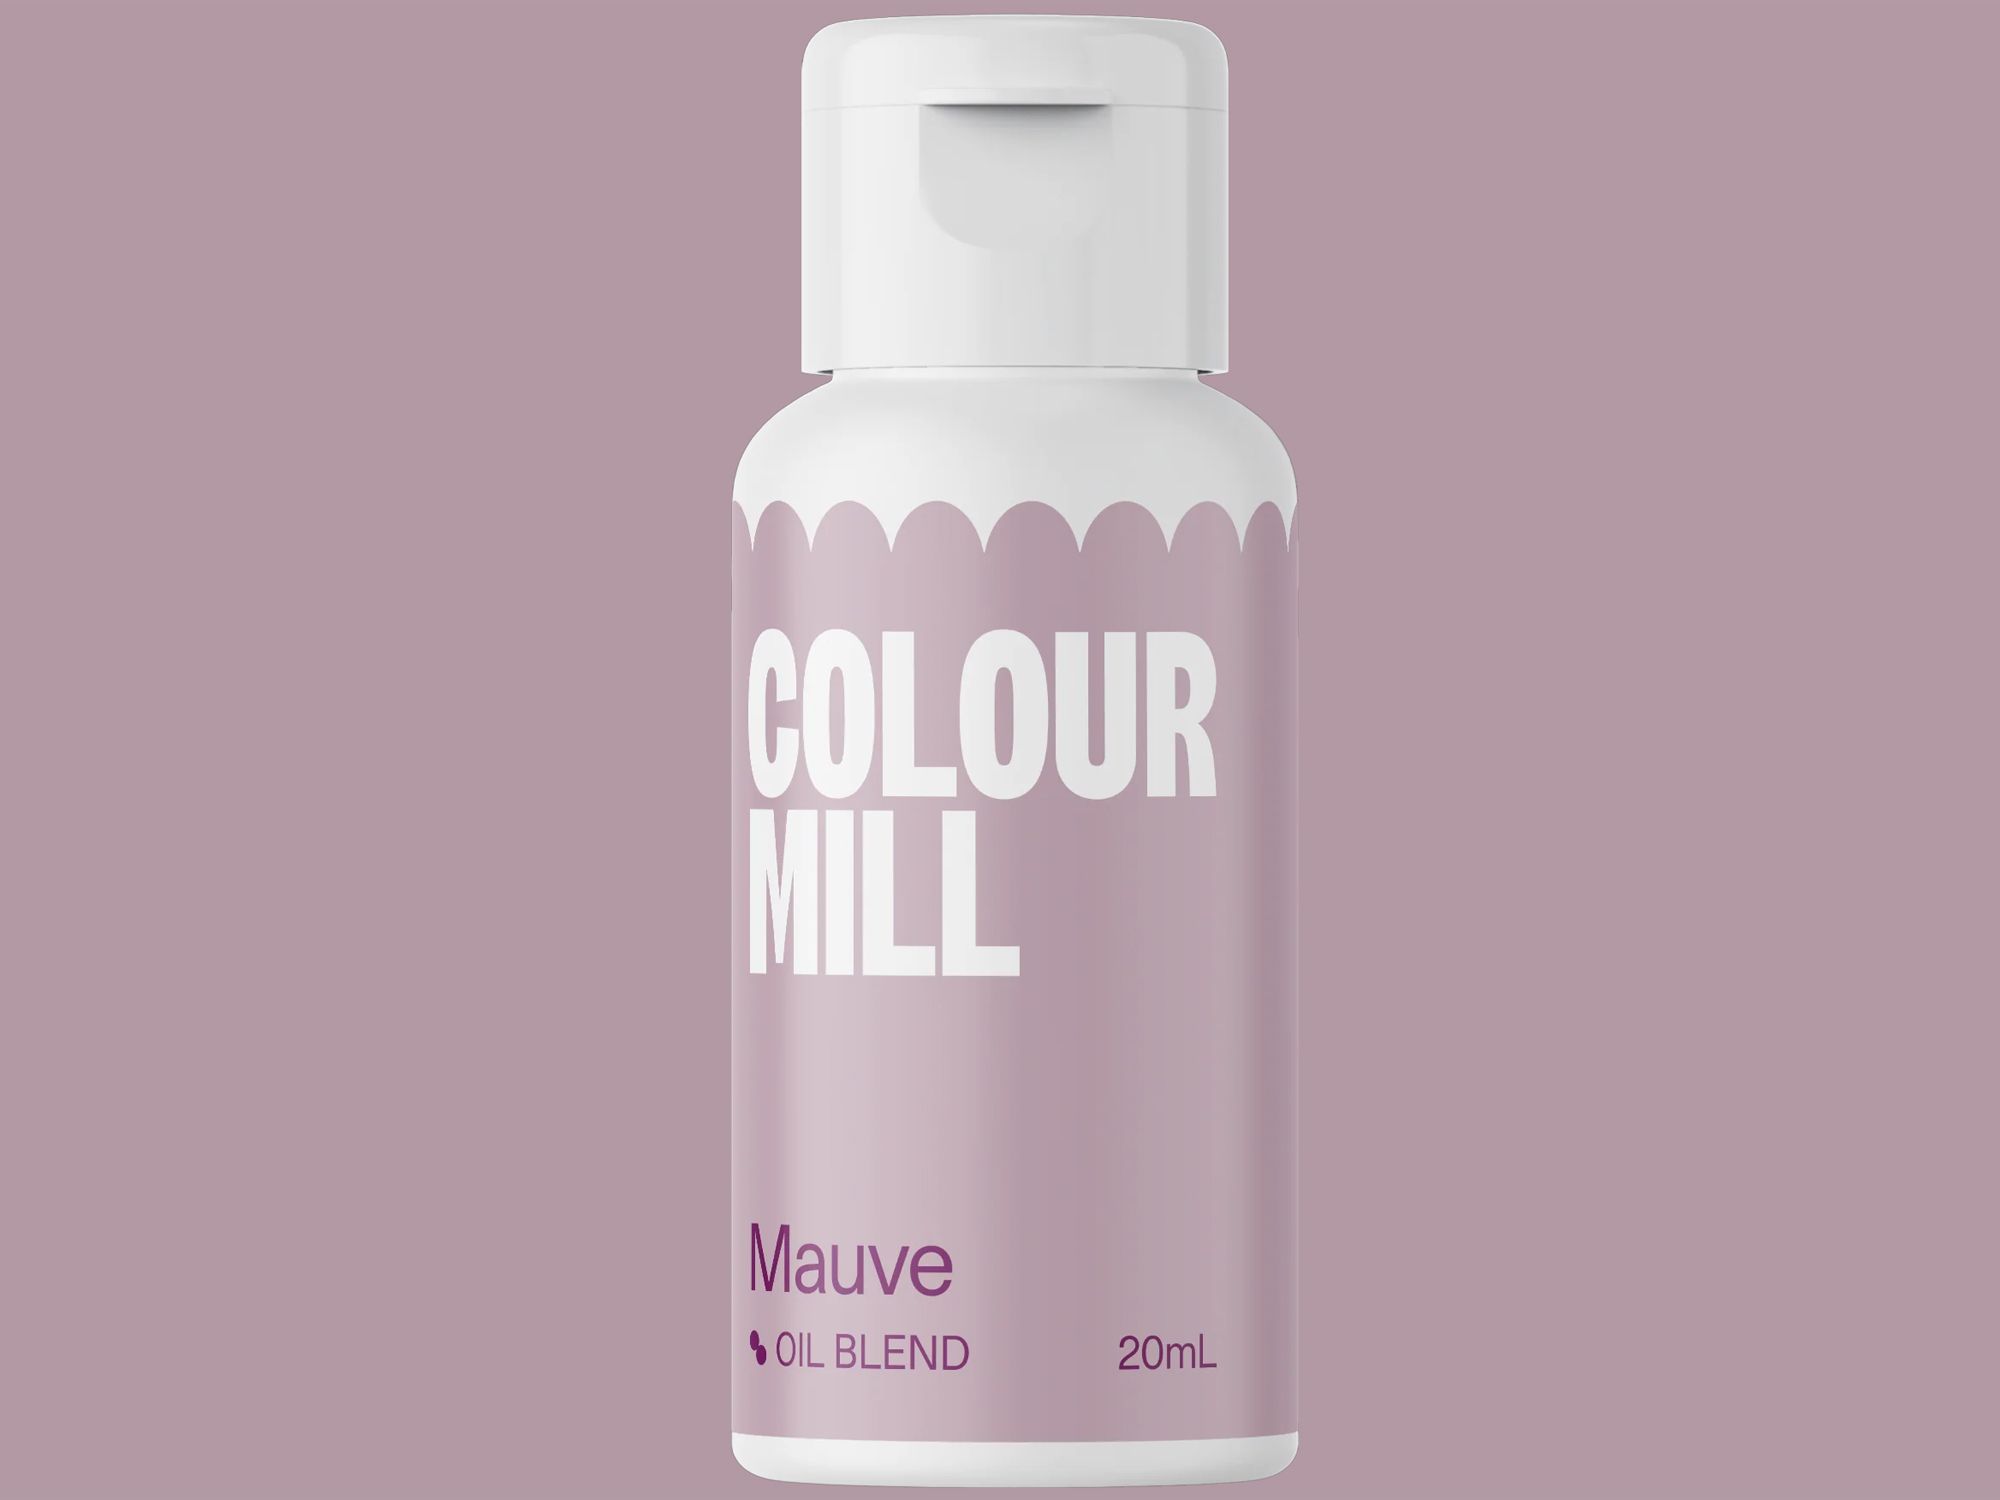 Colour Mill Mauve (Oil Blend) 20ml